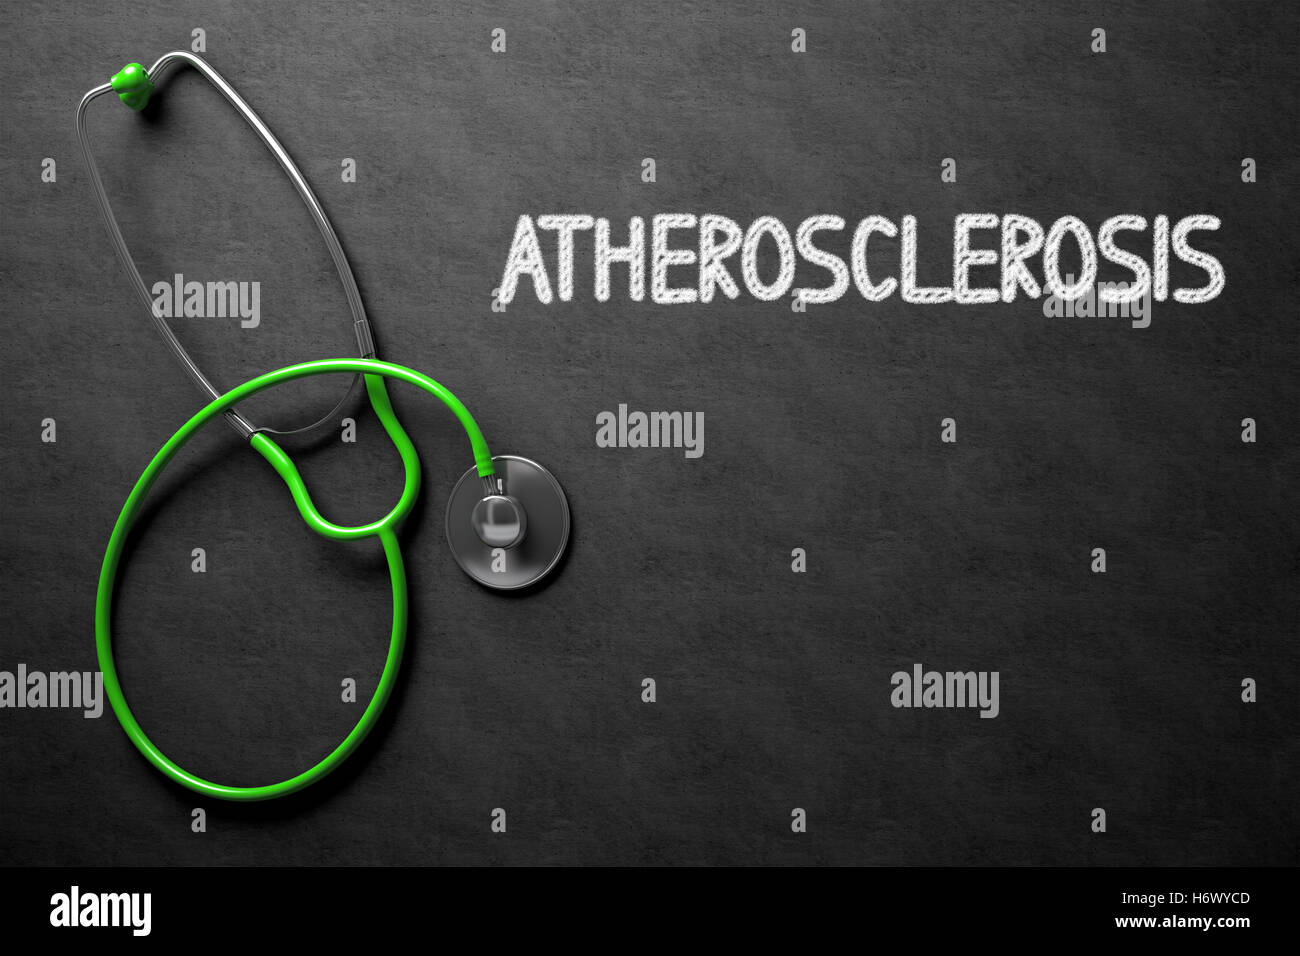 Atherosclerosis Handwritten on Chalkboard. 3D Illustration. Stock Photo